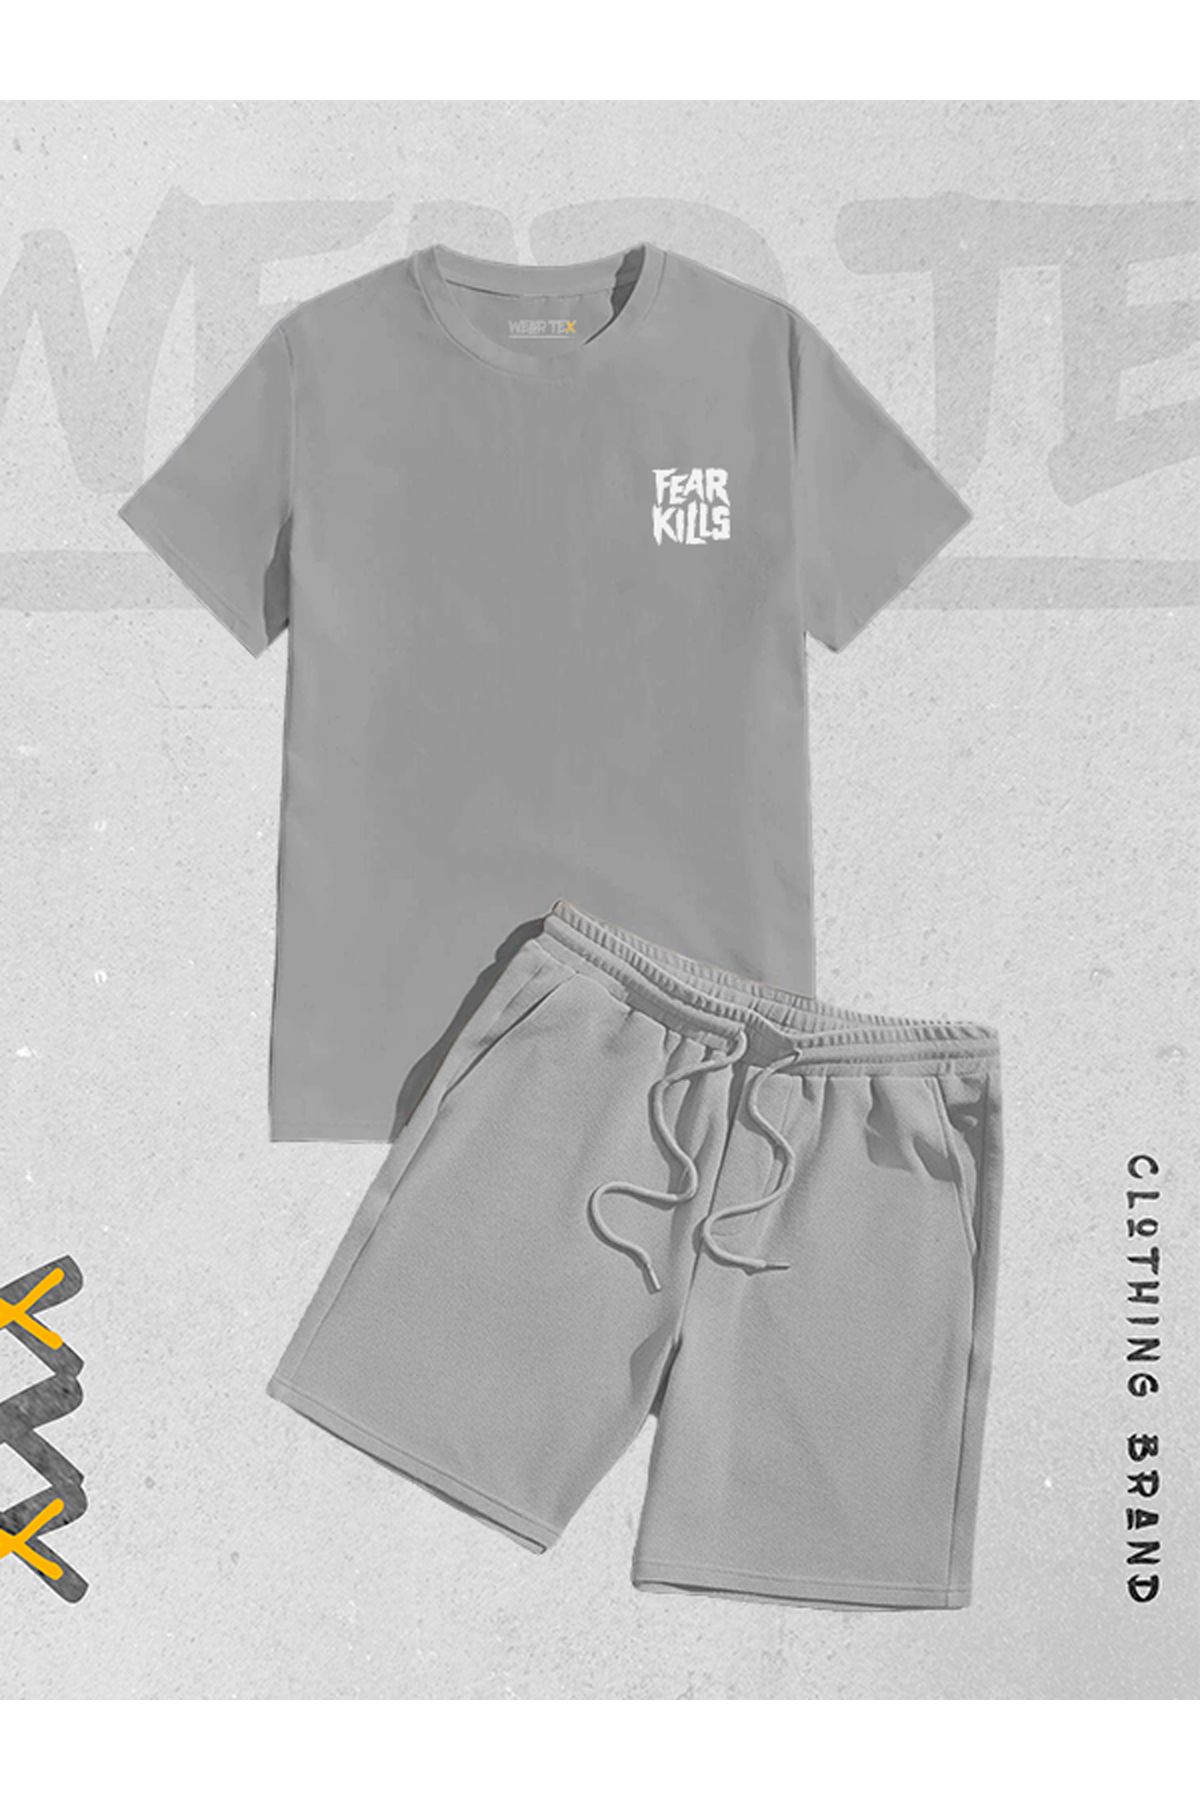 WEARTEX Yeni Sezon 2'li Fear Kills  Baskılı  Şort T-shirt Takım Unisex